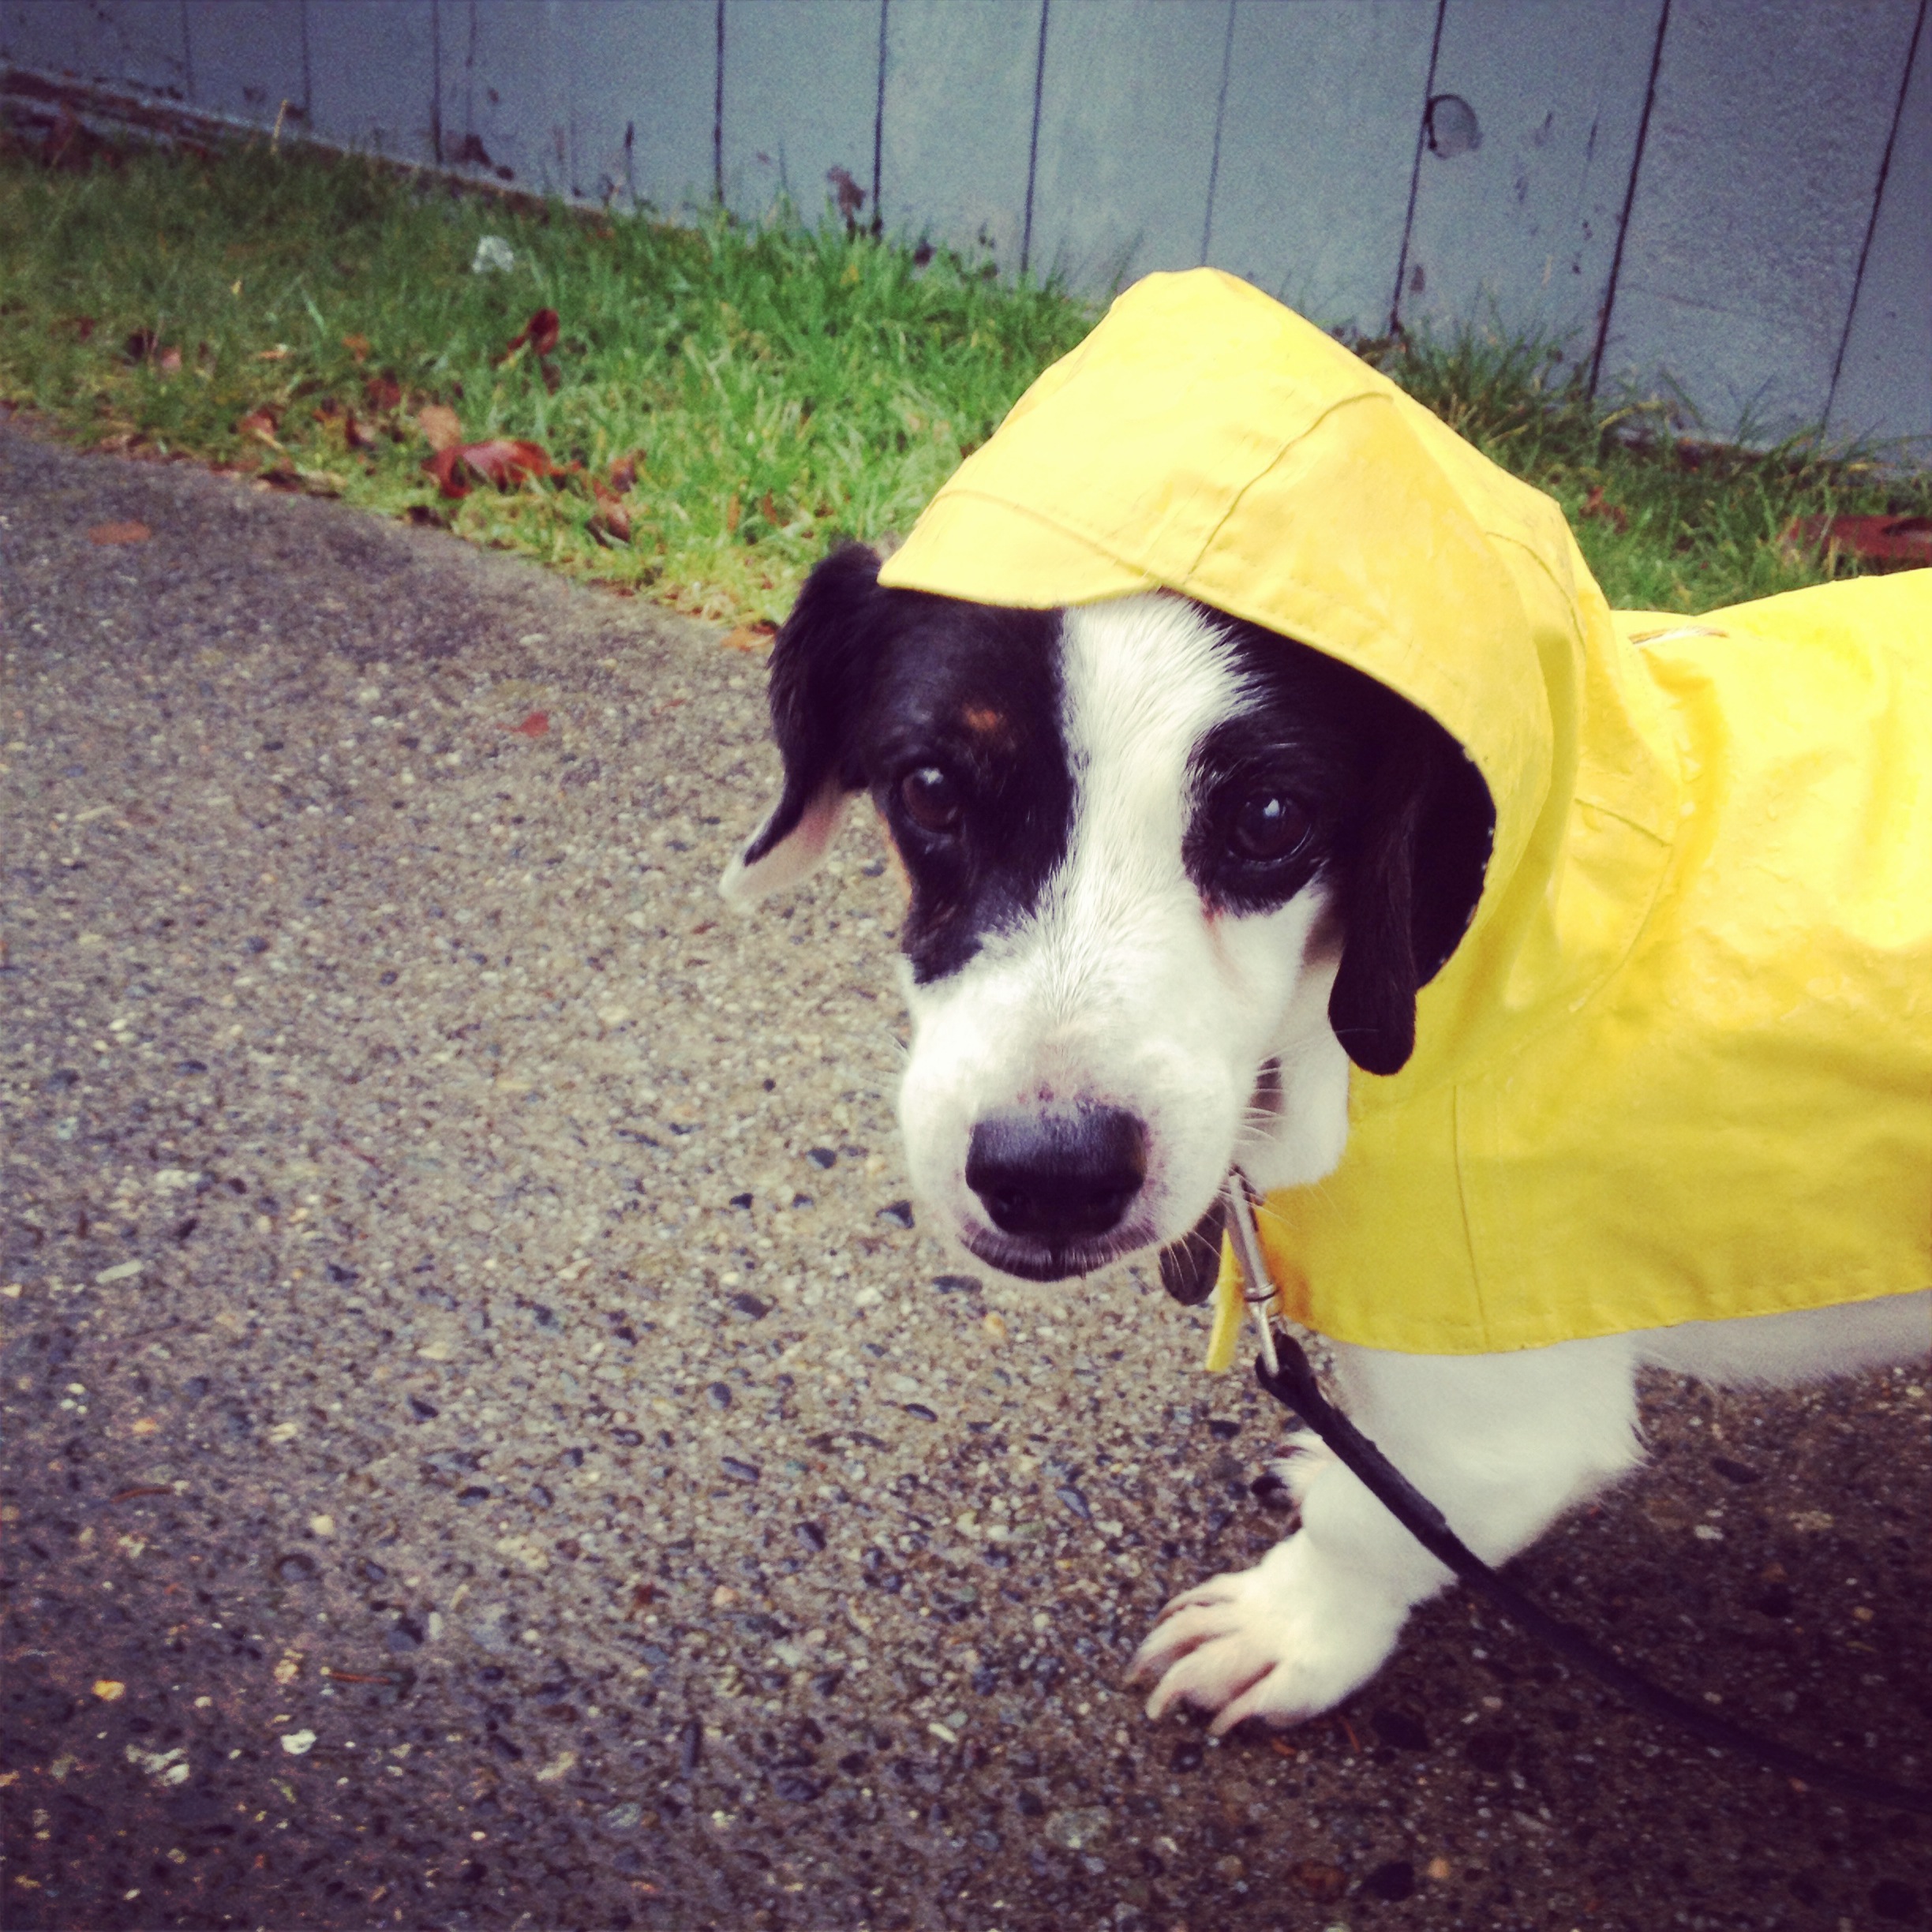 He lives a good life, even has a raincoat..